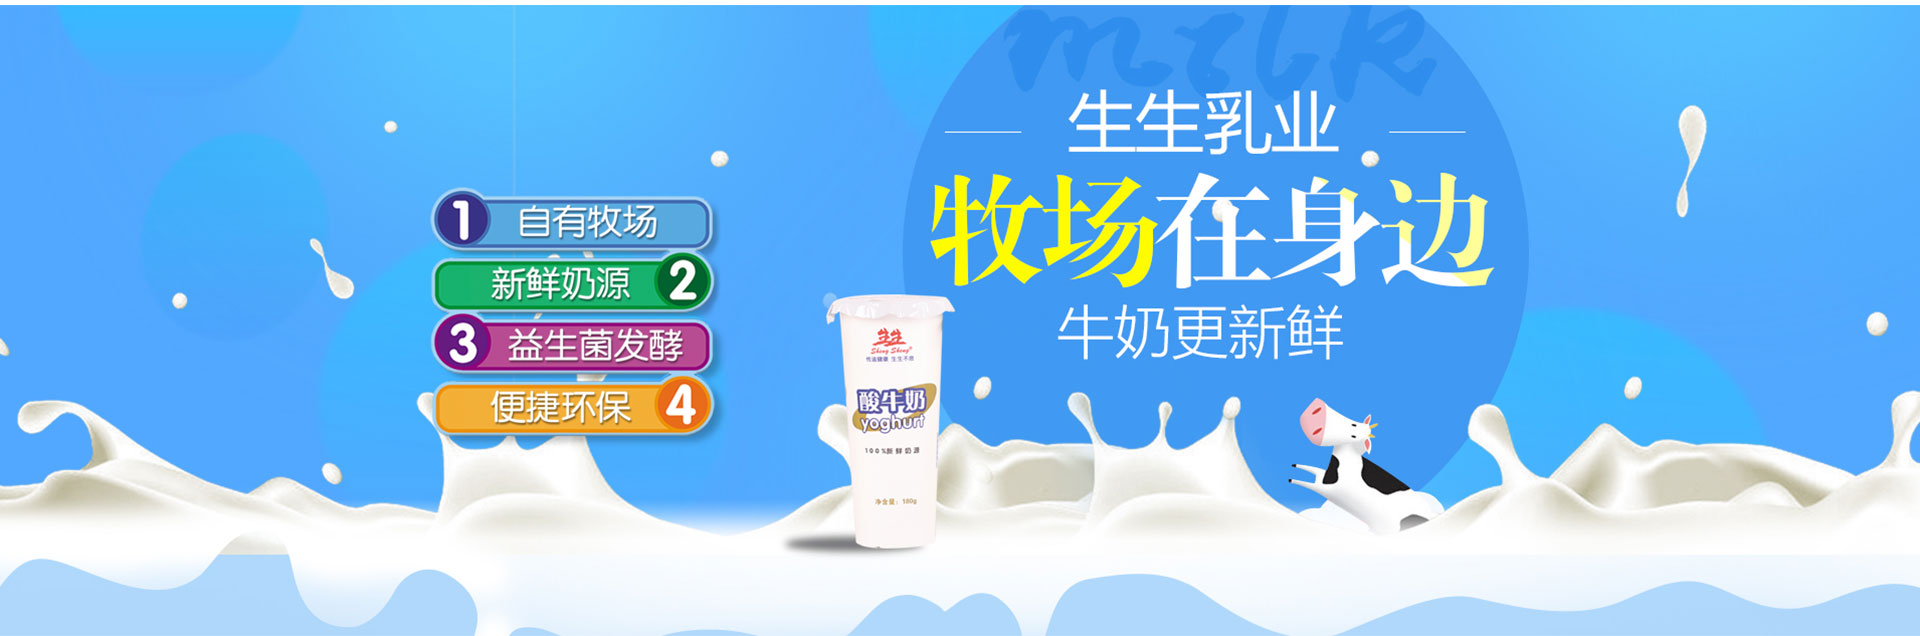 洛阳订奶_酸奶代理_酸奶招商_牛奶品牌-生生乳业